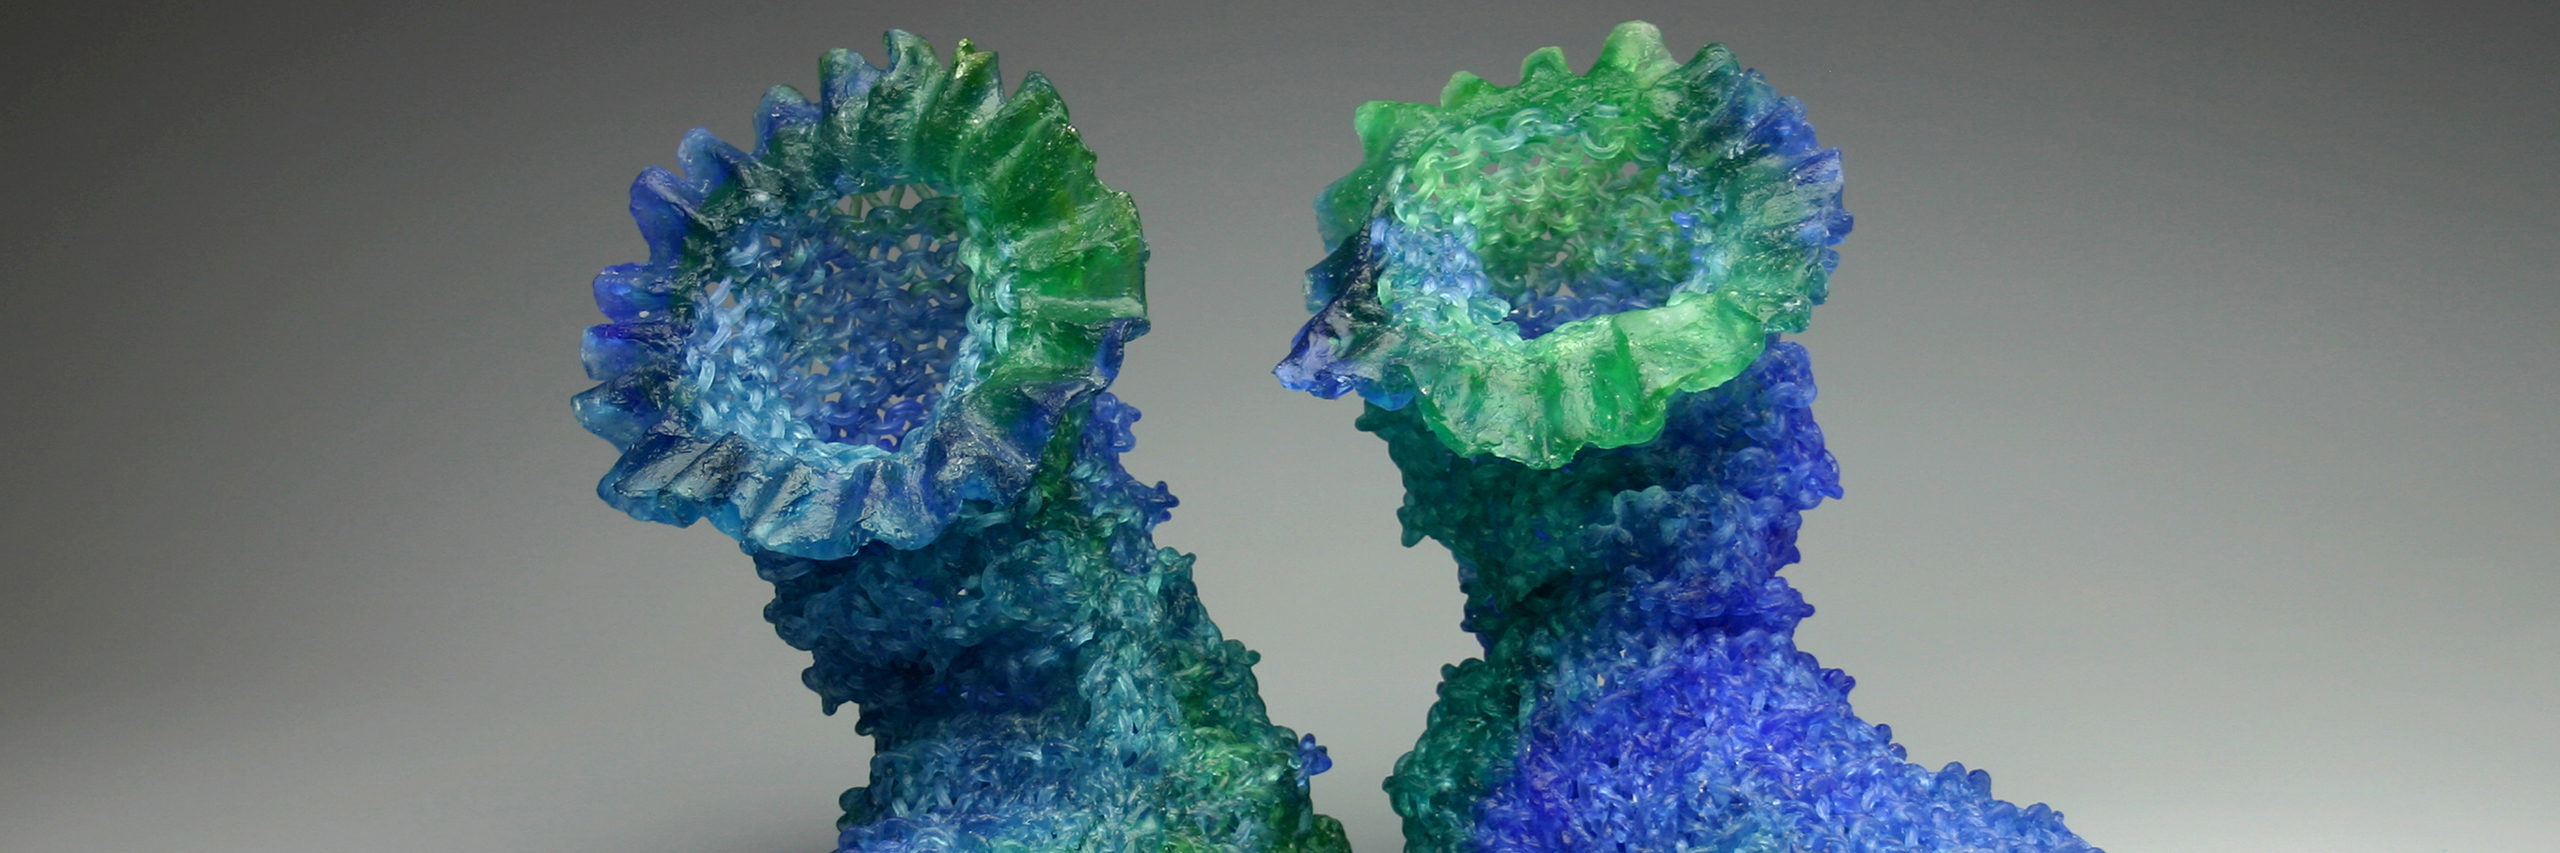 Carol Milne, Lena & Tilta, 2011, kiln cast lead crystal, 12h x 8.5w x 16d inches each, Courtesy of the Artist